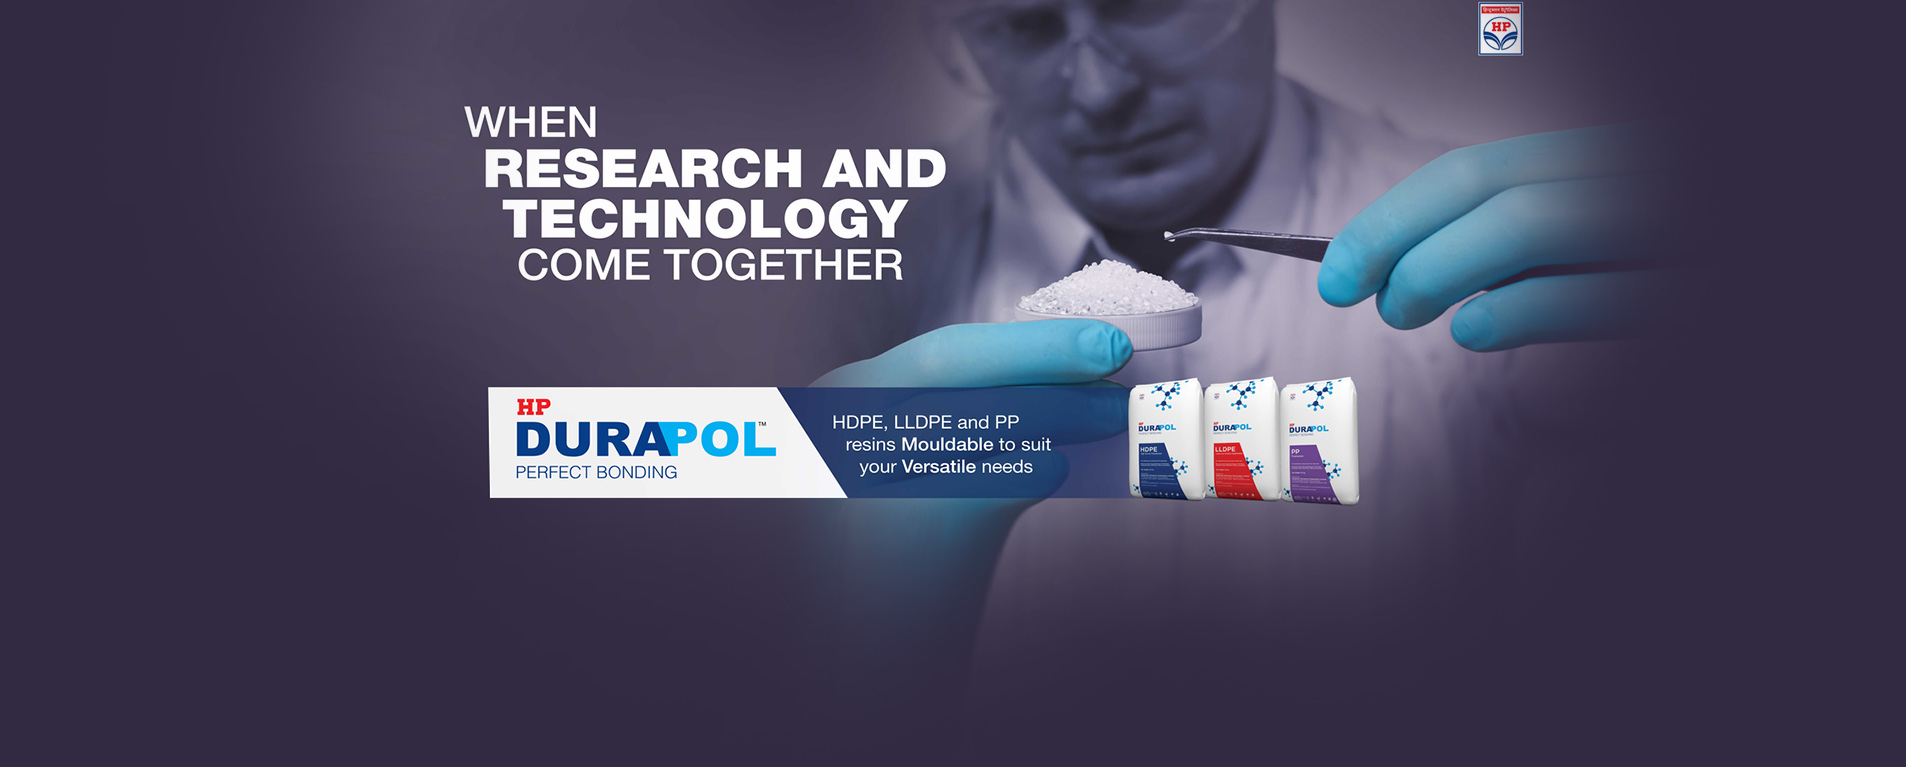 Durapol Brand Campaign - 9